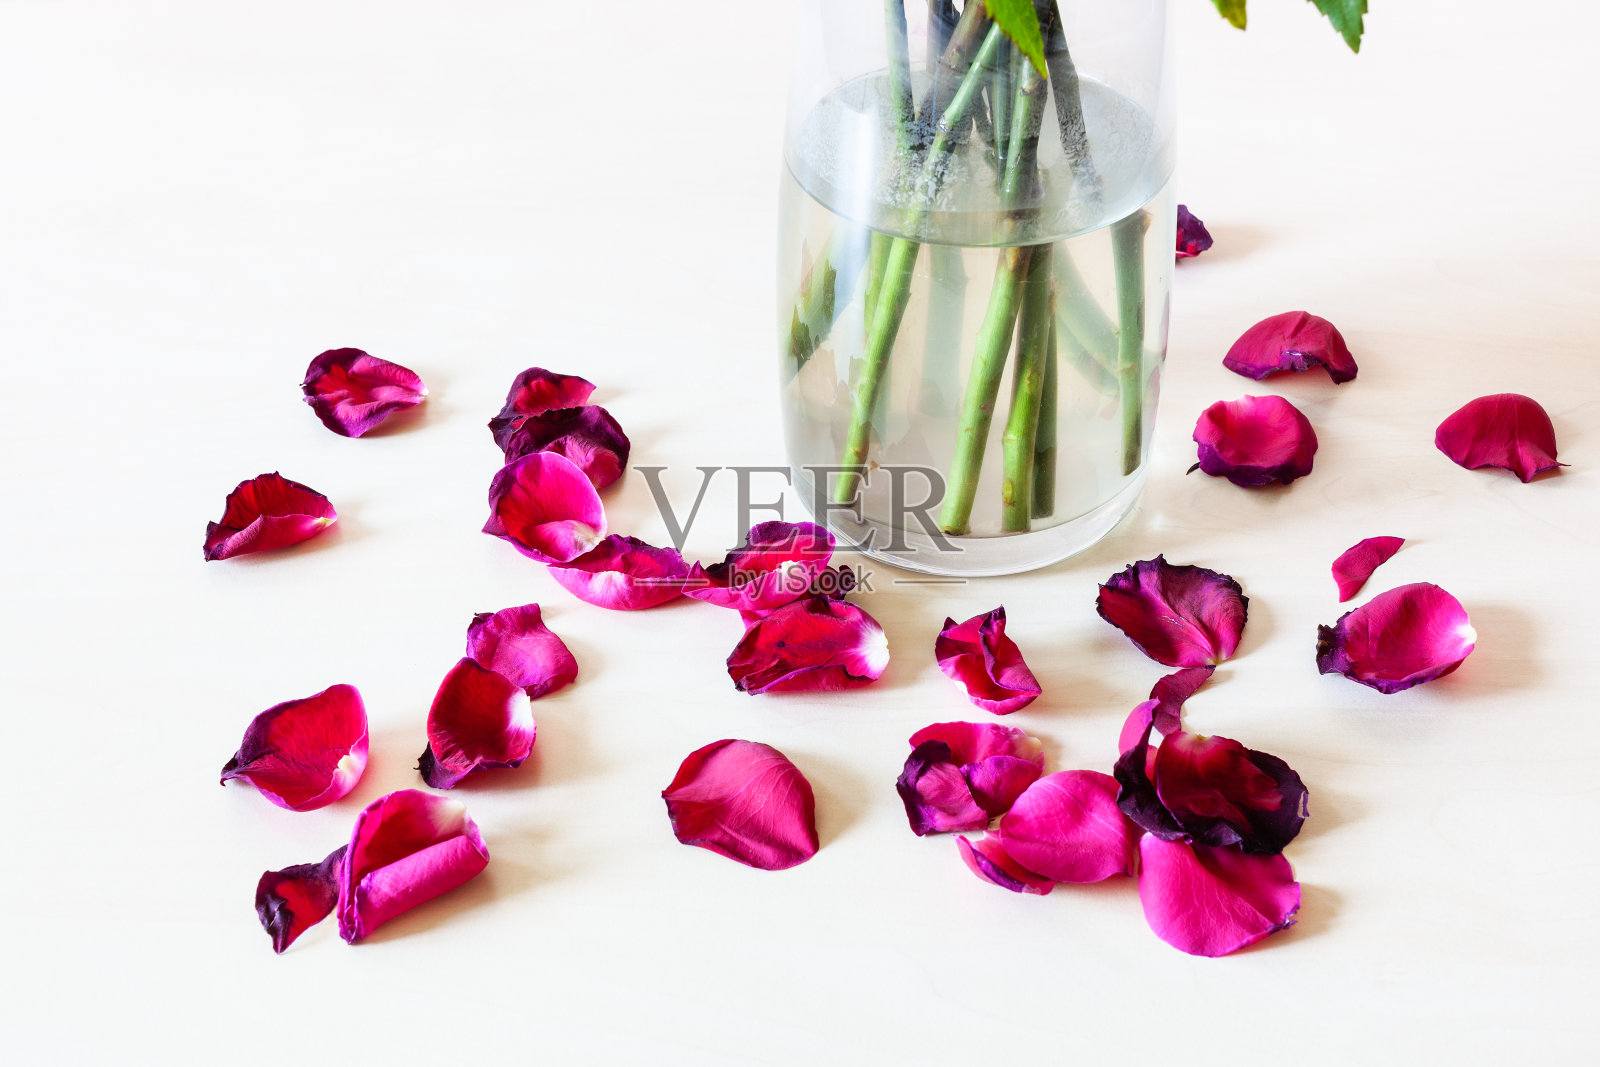 玻璃花瓶旁散落的红玫瑰花瓣照片摄影图片